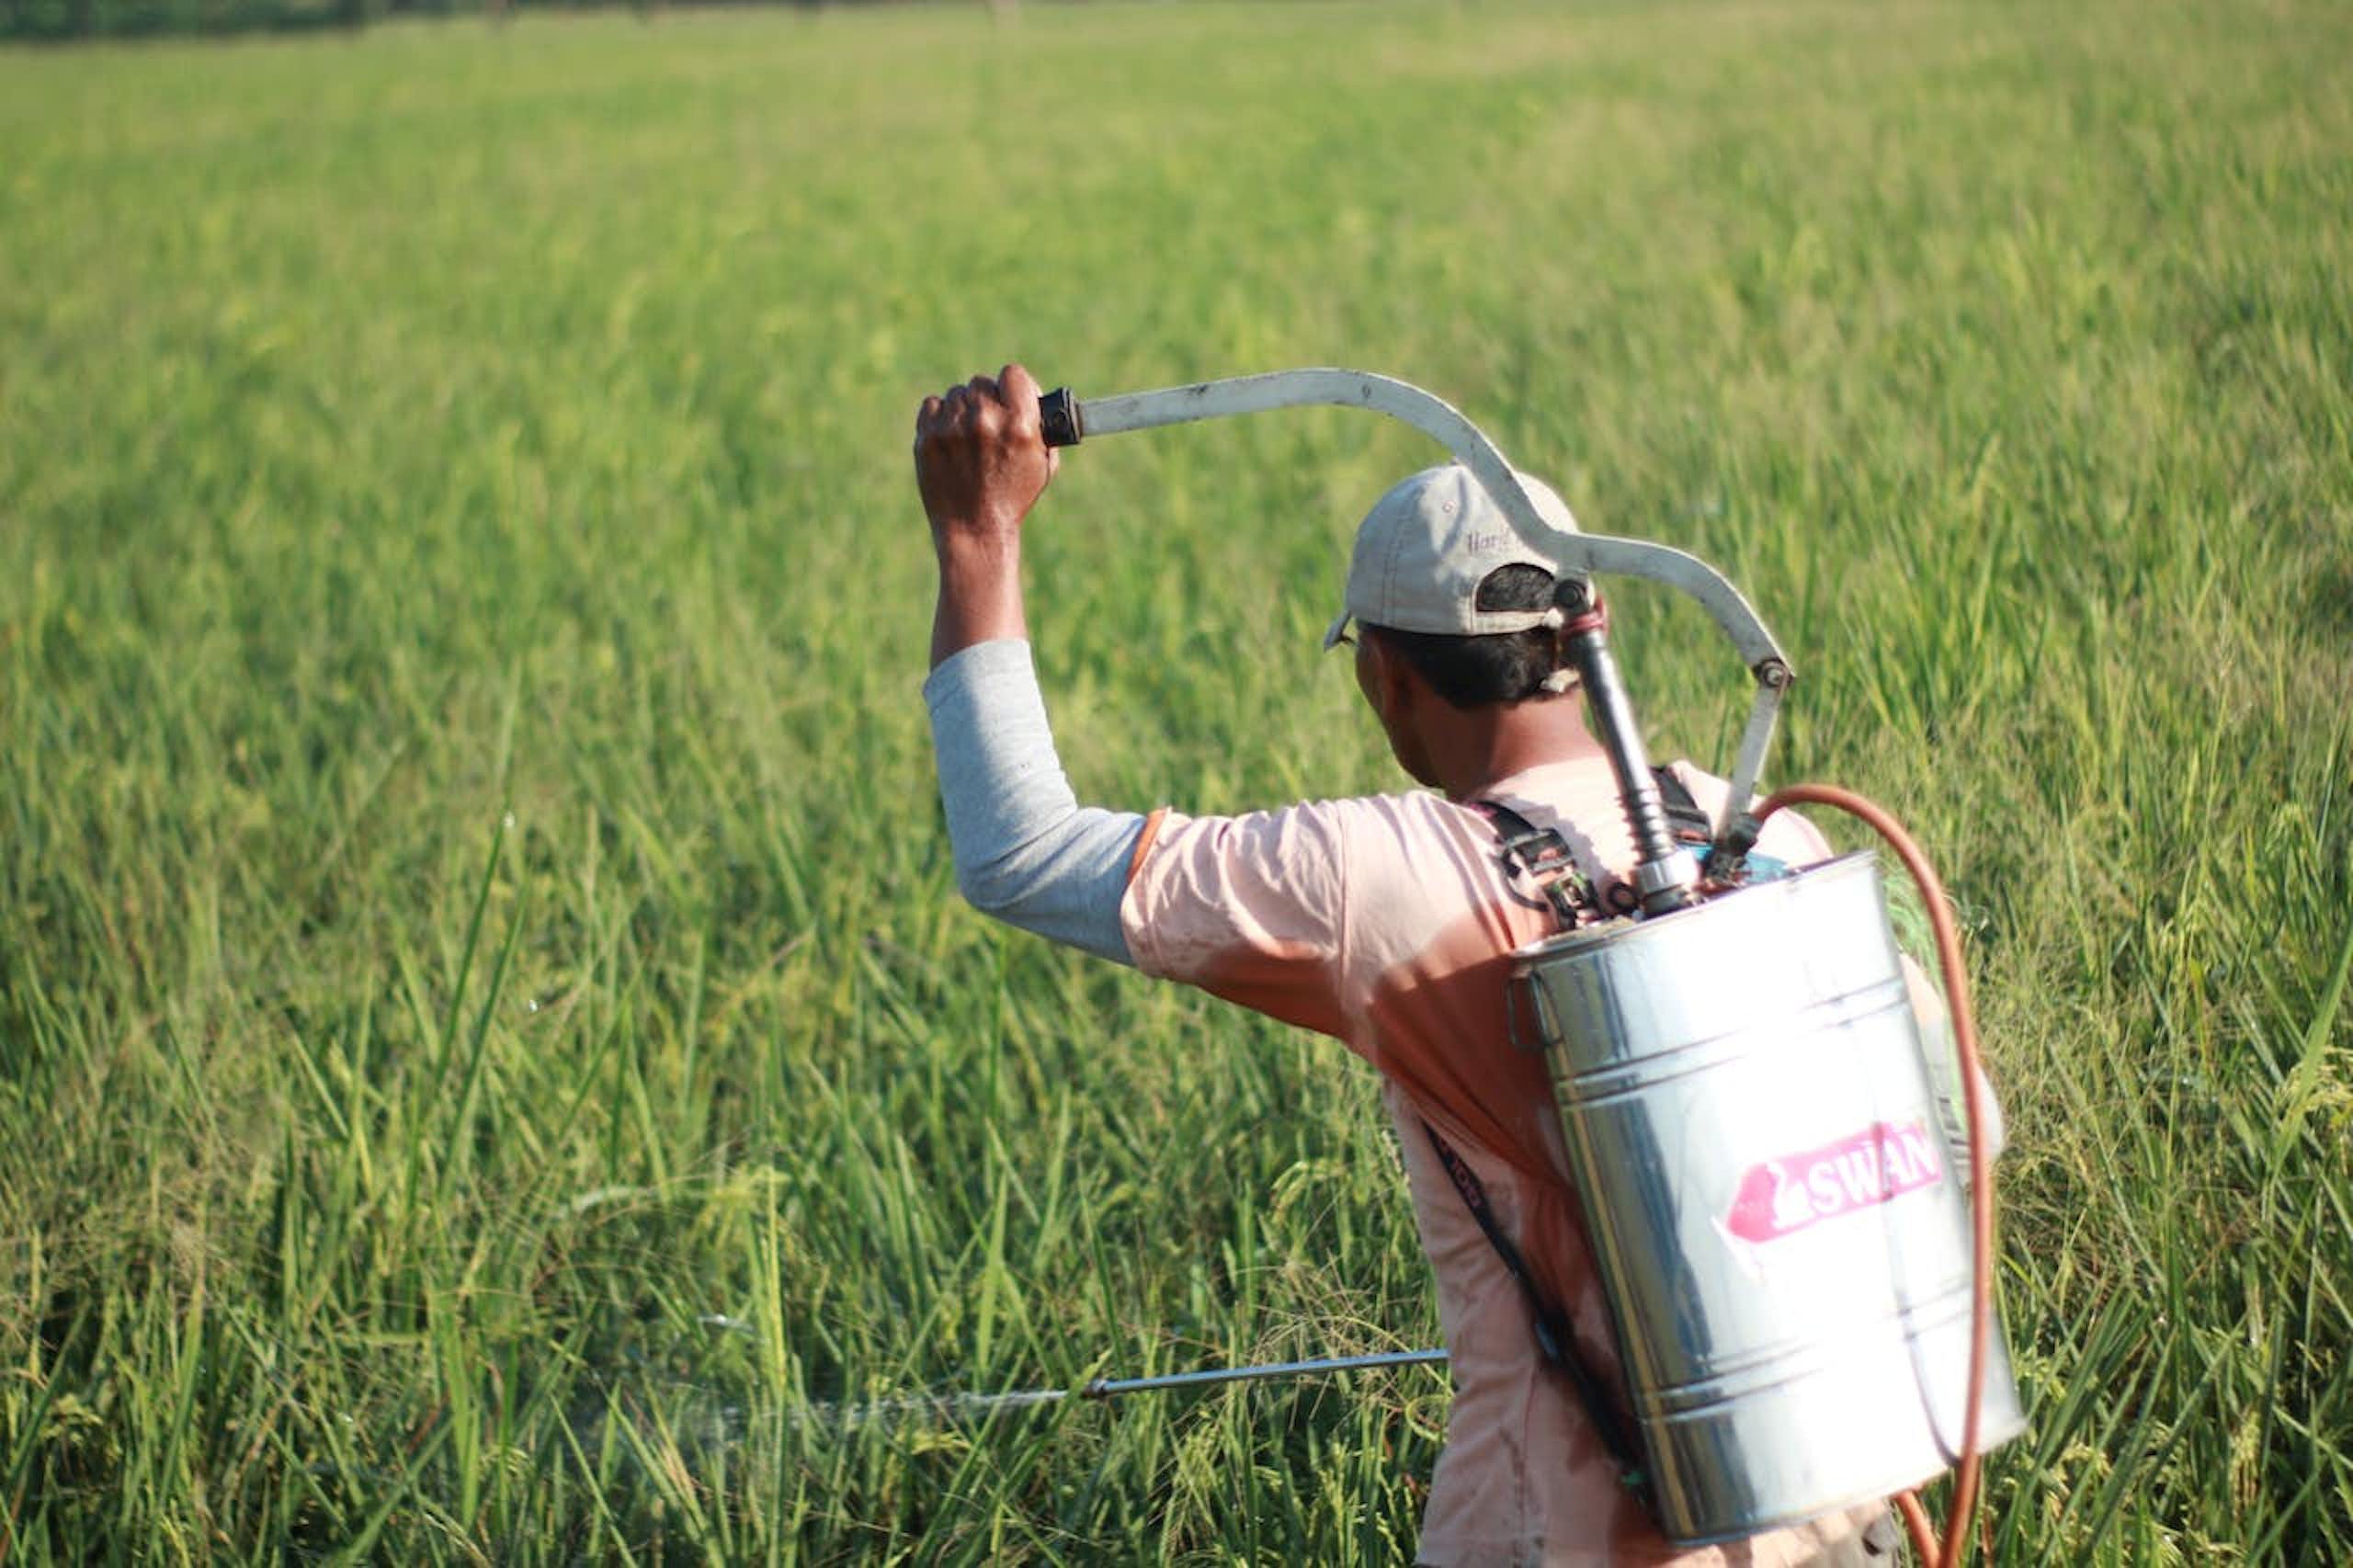 Indonesia pengguna pestisida terbesar ketiga dunia, tapi riset efeknya masih kurang